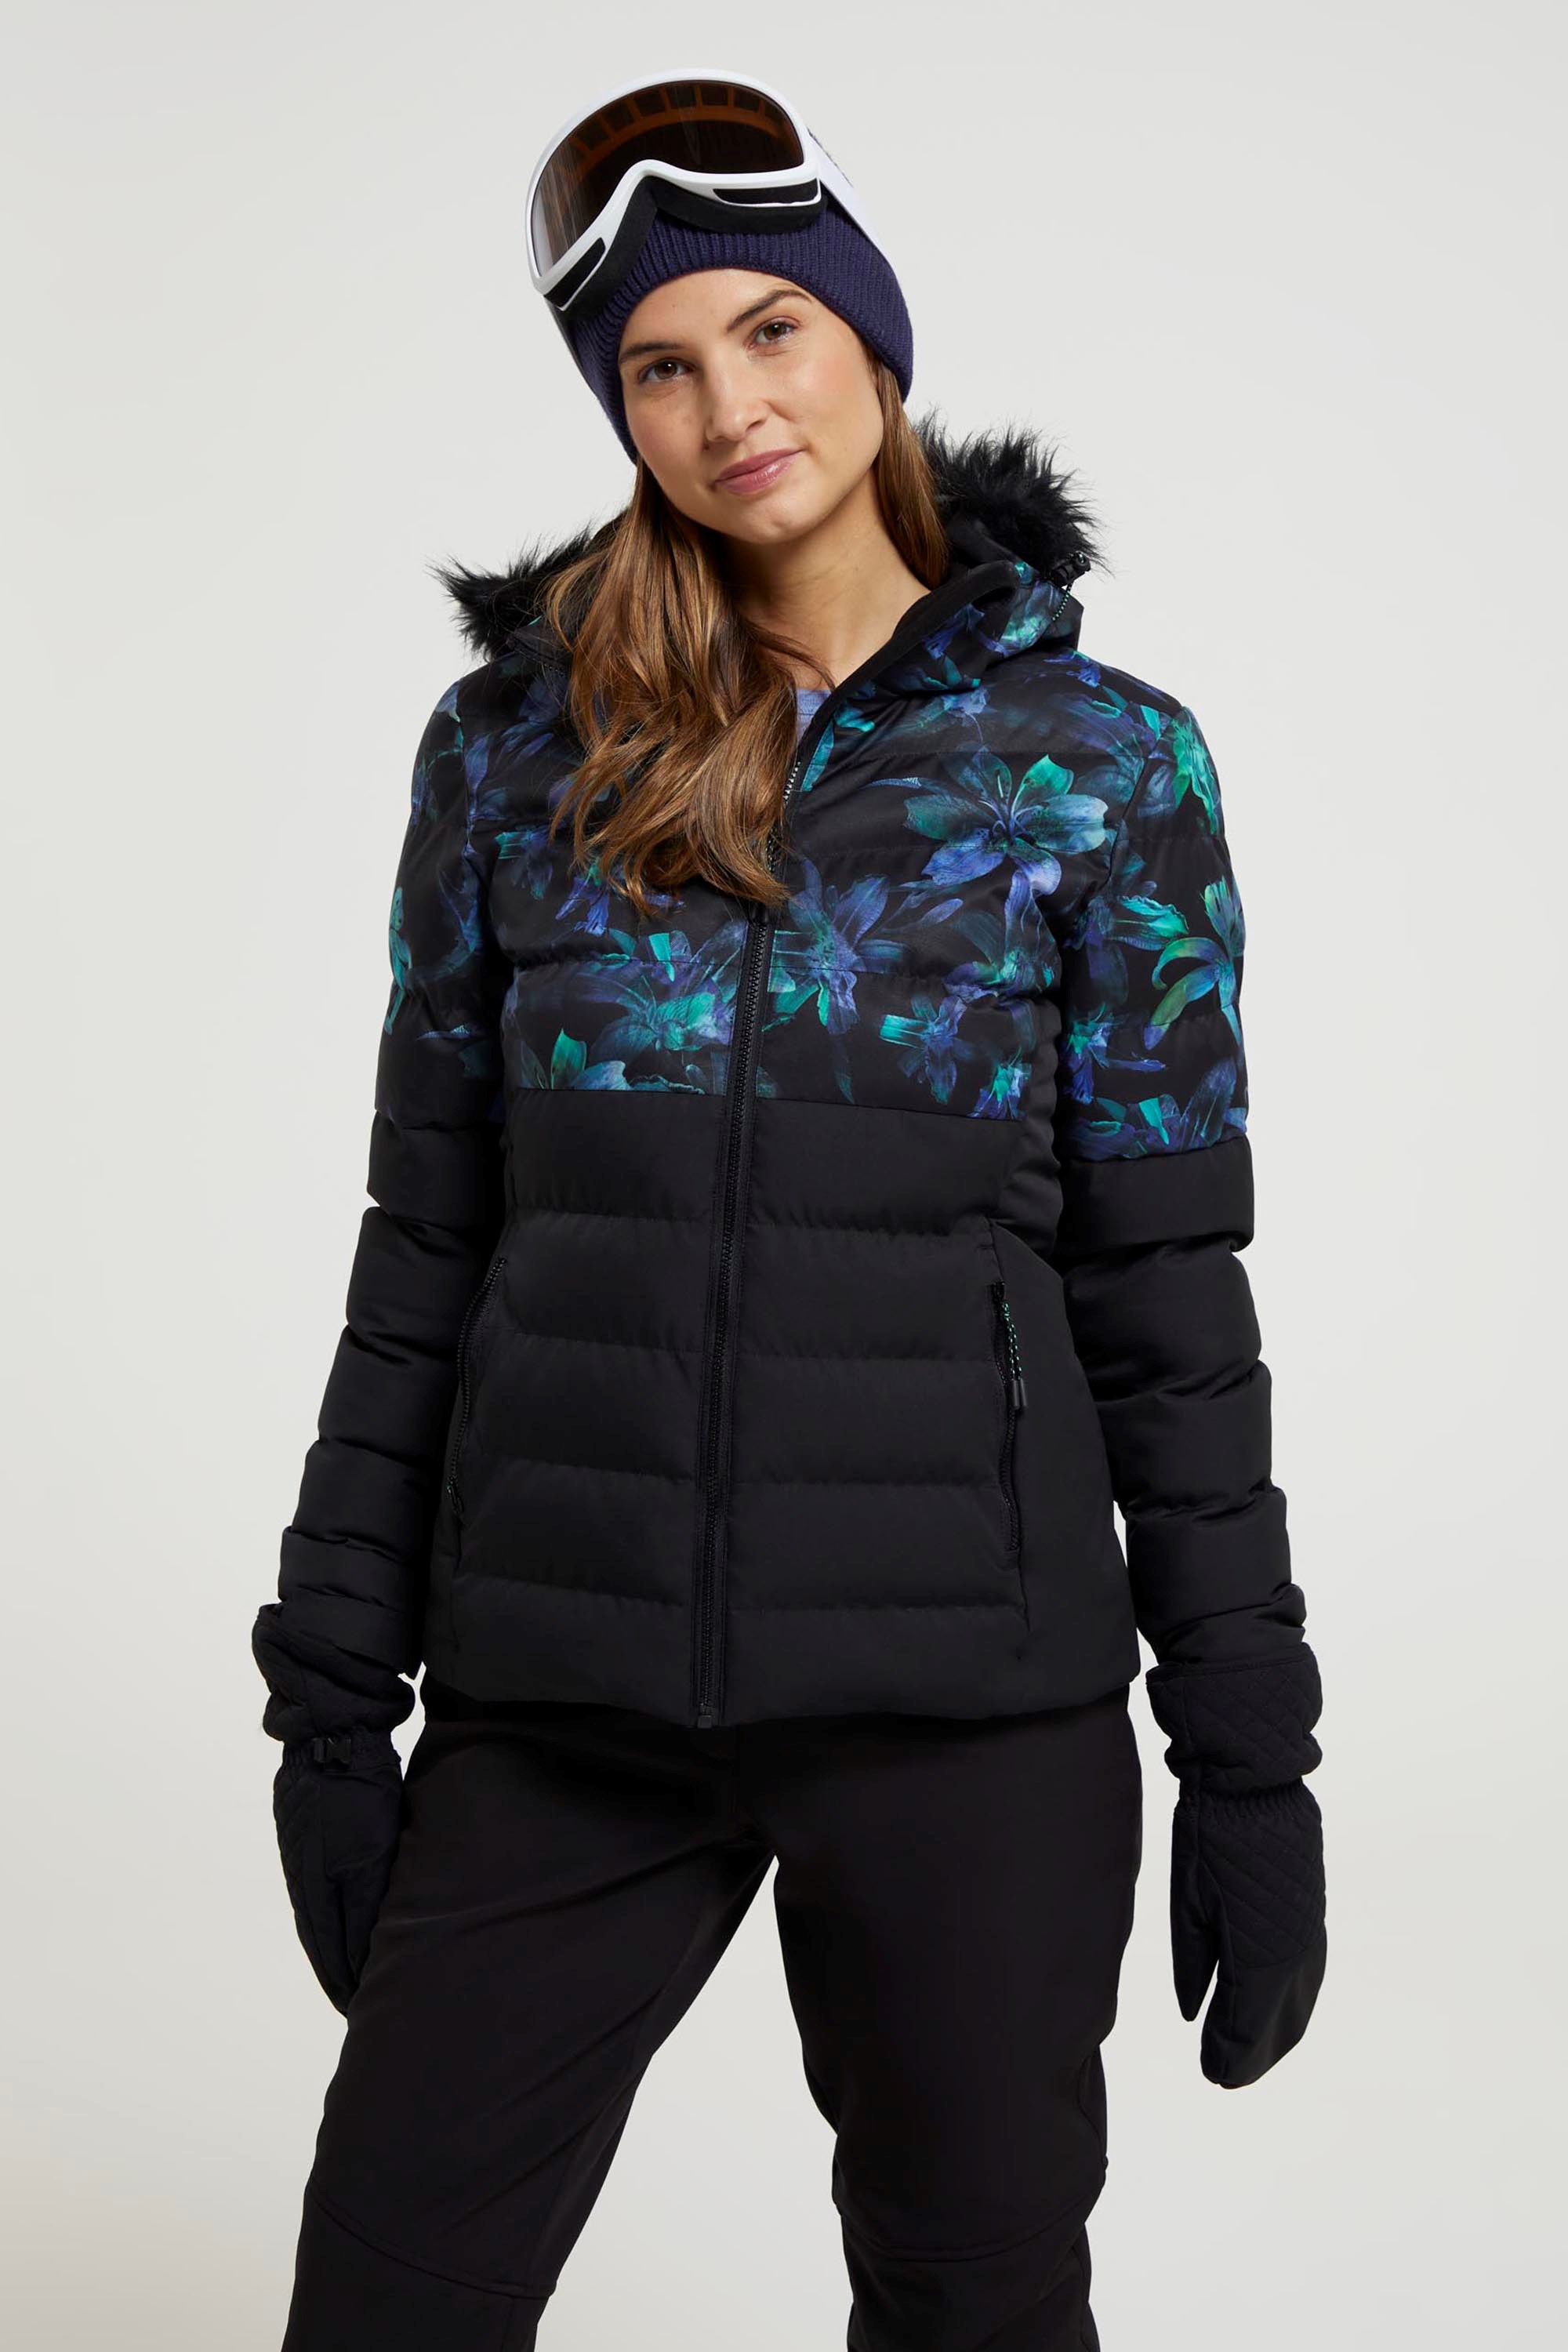 Avalanche Women's Mid-Long Winter Coat Jacket Hoodded Black Size XXS